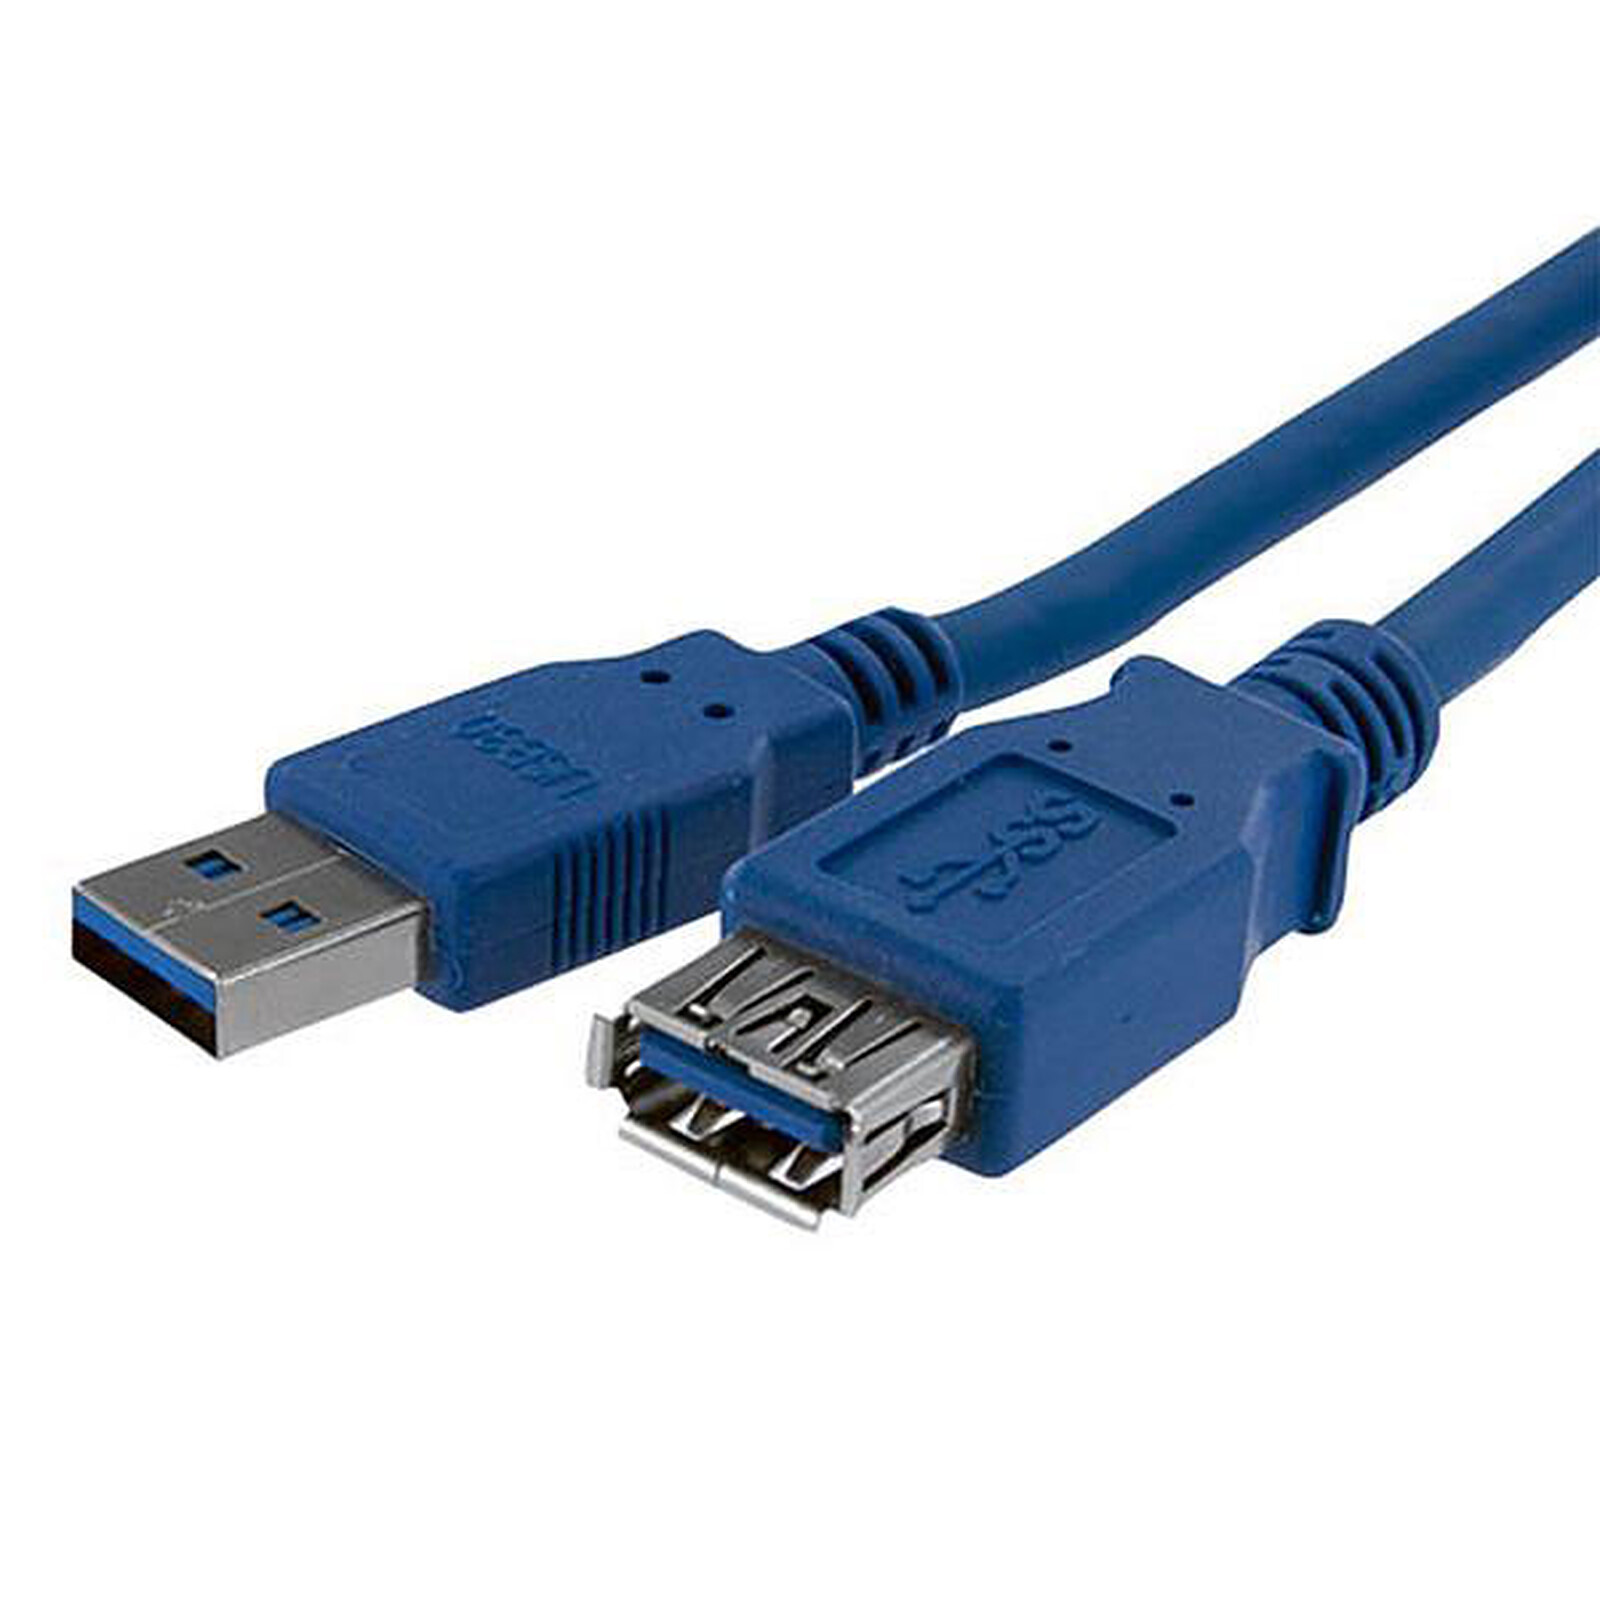 Rallonge USB 3.0 type A et A noire - 5,0 m